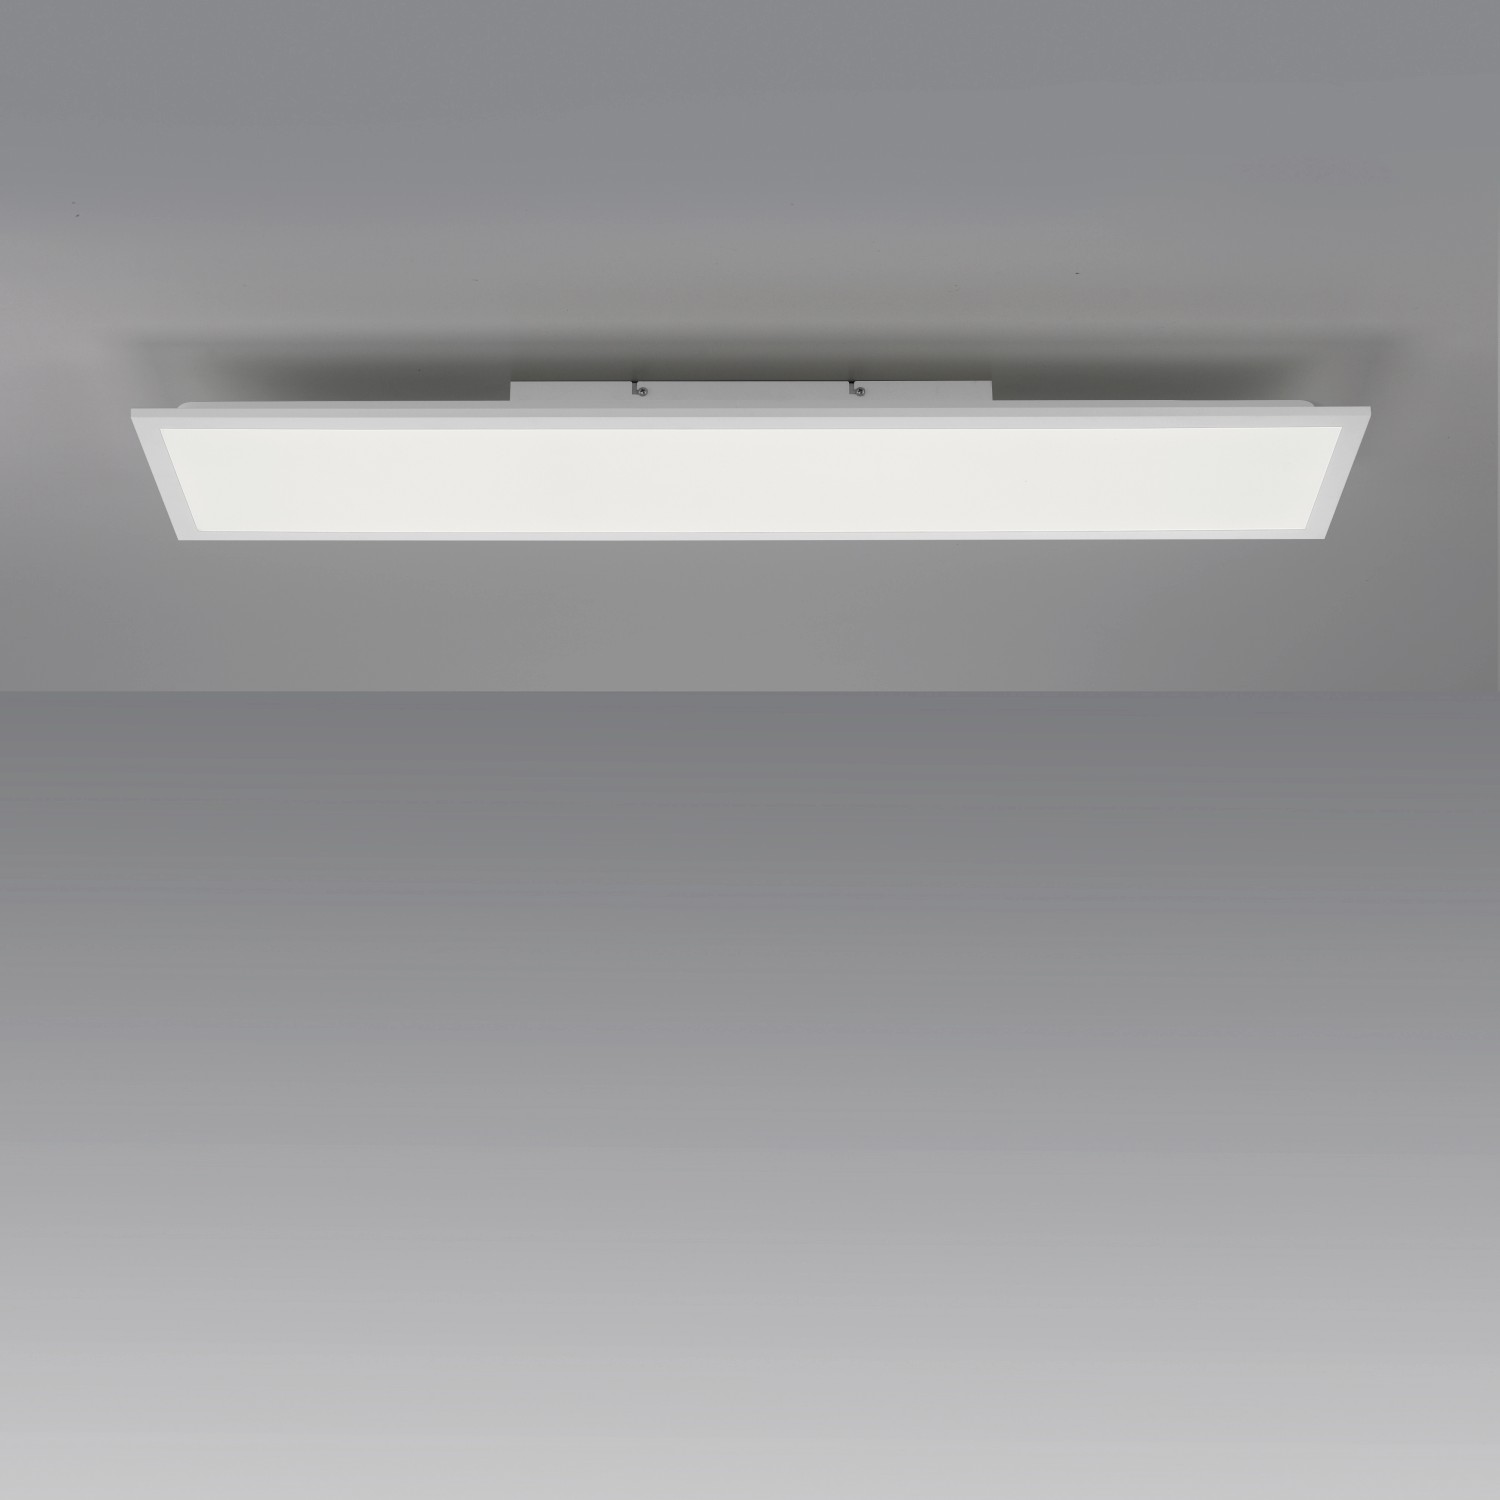 LED-Deckenleuchte Weiß Flat Just bei Light. OBI kaufen